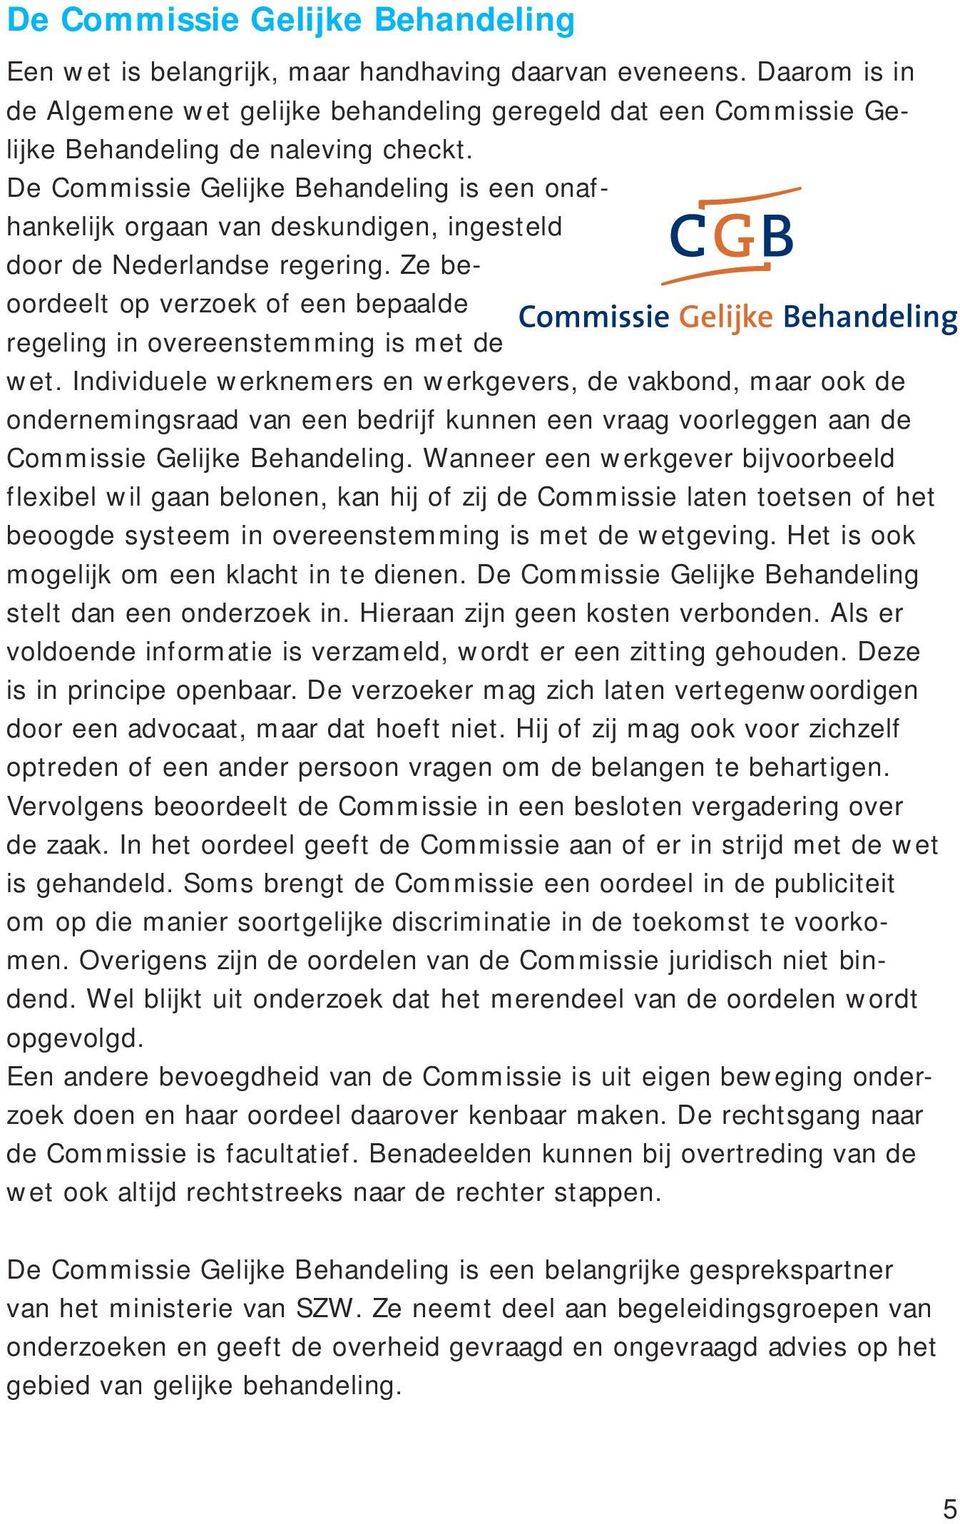 De Commissie Gelijke Behandeling is een onafhankelijk orgaan van deskundigen, ingesteld door de Nederlandse regering.